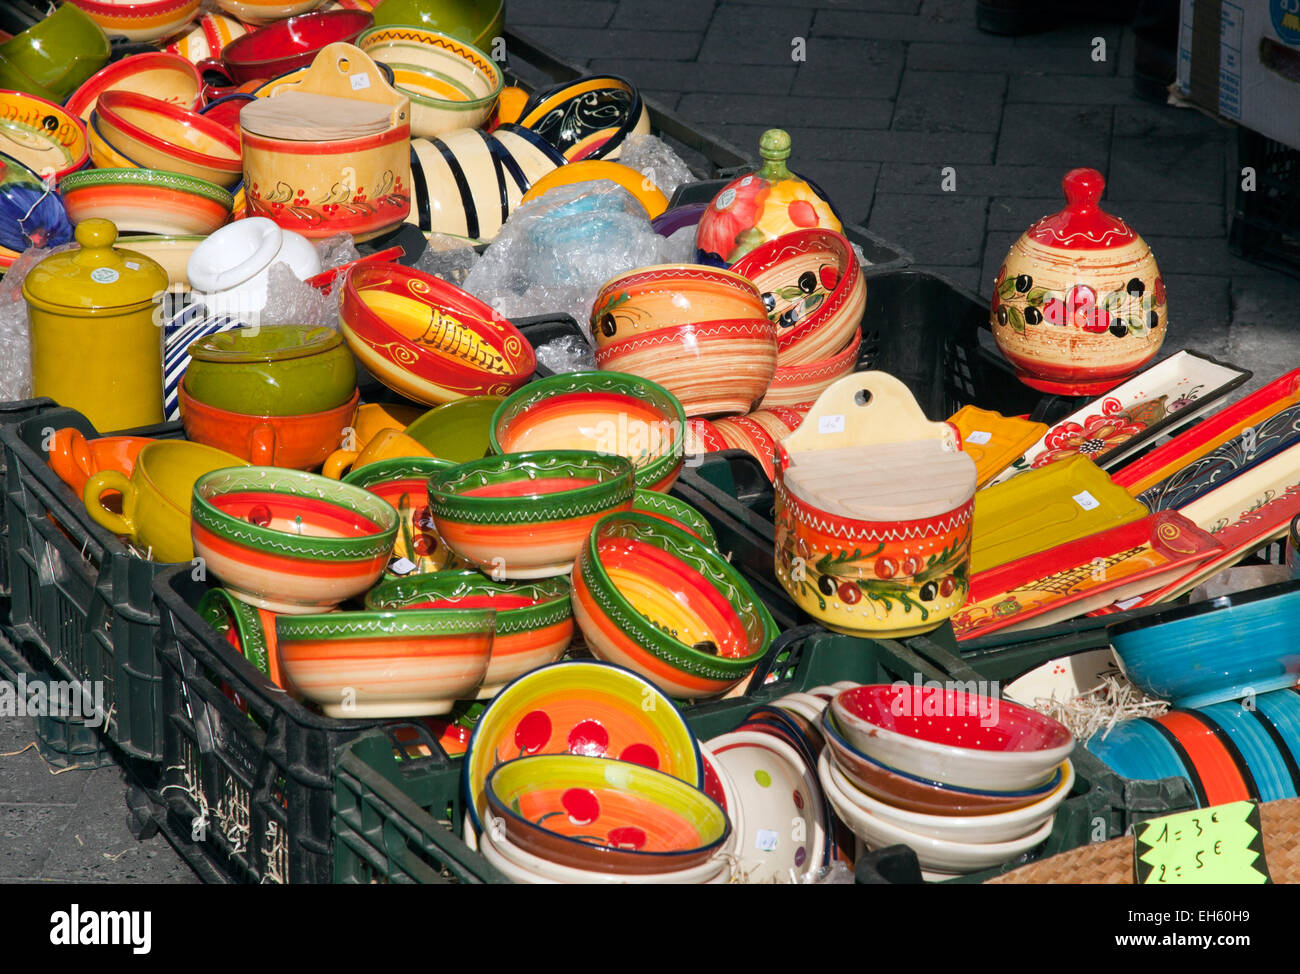 Typische Provencals Keramik, Vintage-Kleidung, Spielzeug, Lebensmittel und Antiquitäten teilen Bürgersteige an Markttagen in L'Isle-Sur-la-Sorgue. Stockfoto